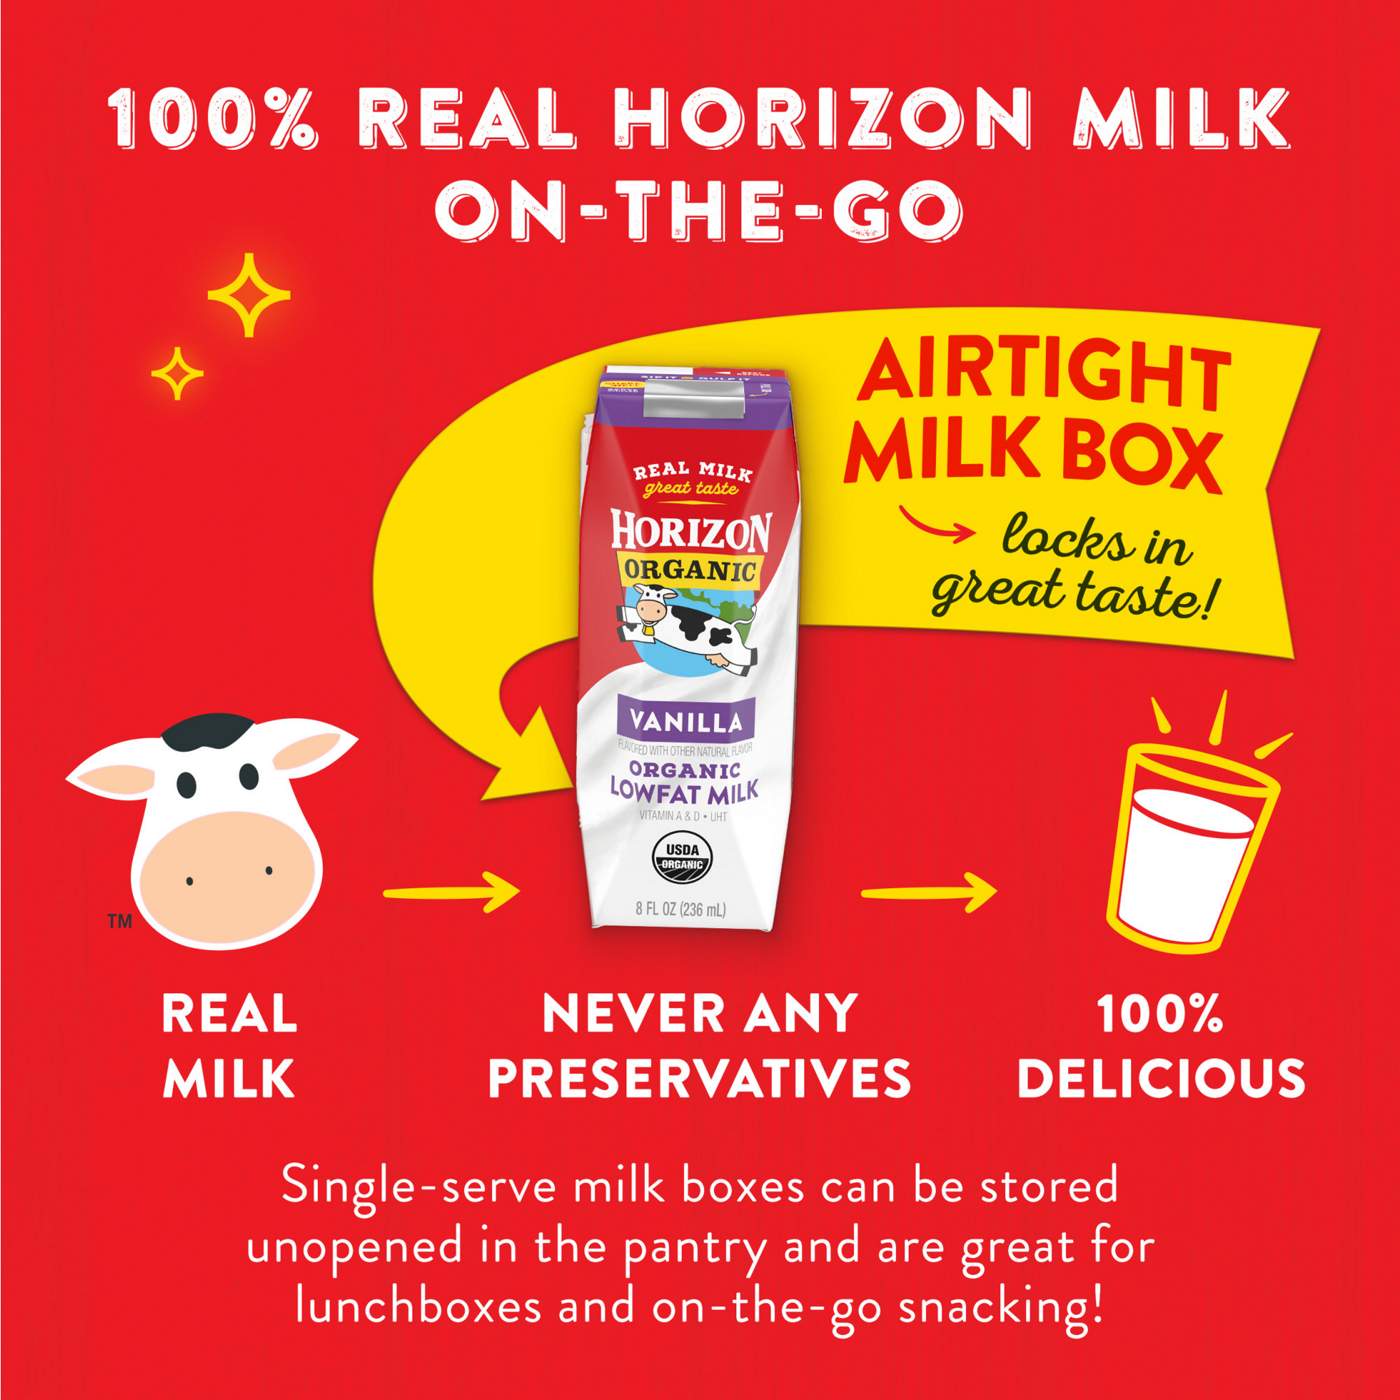 Horizon Organic 1% Lowfat Uht Vanilla Milk; image 3 of 3